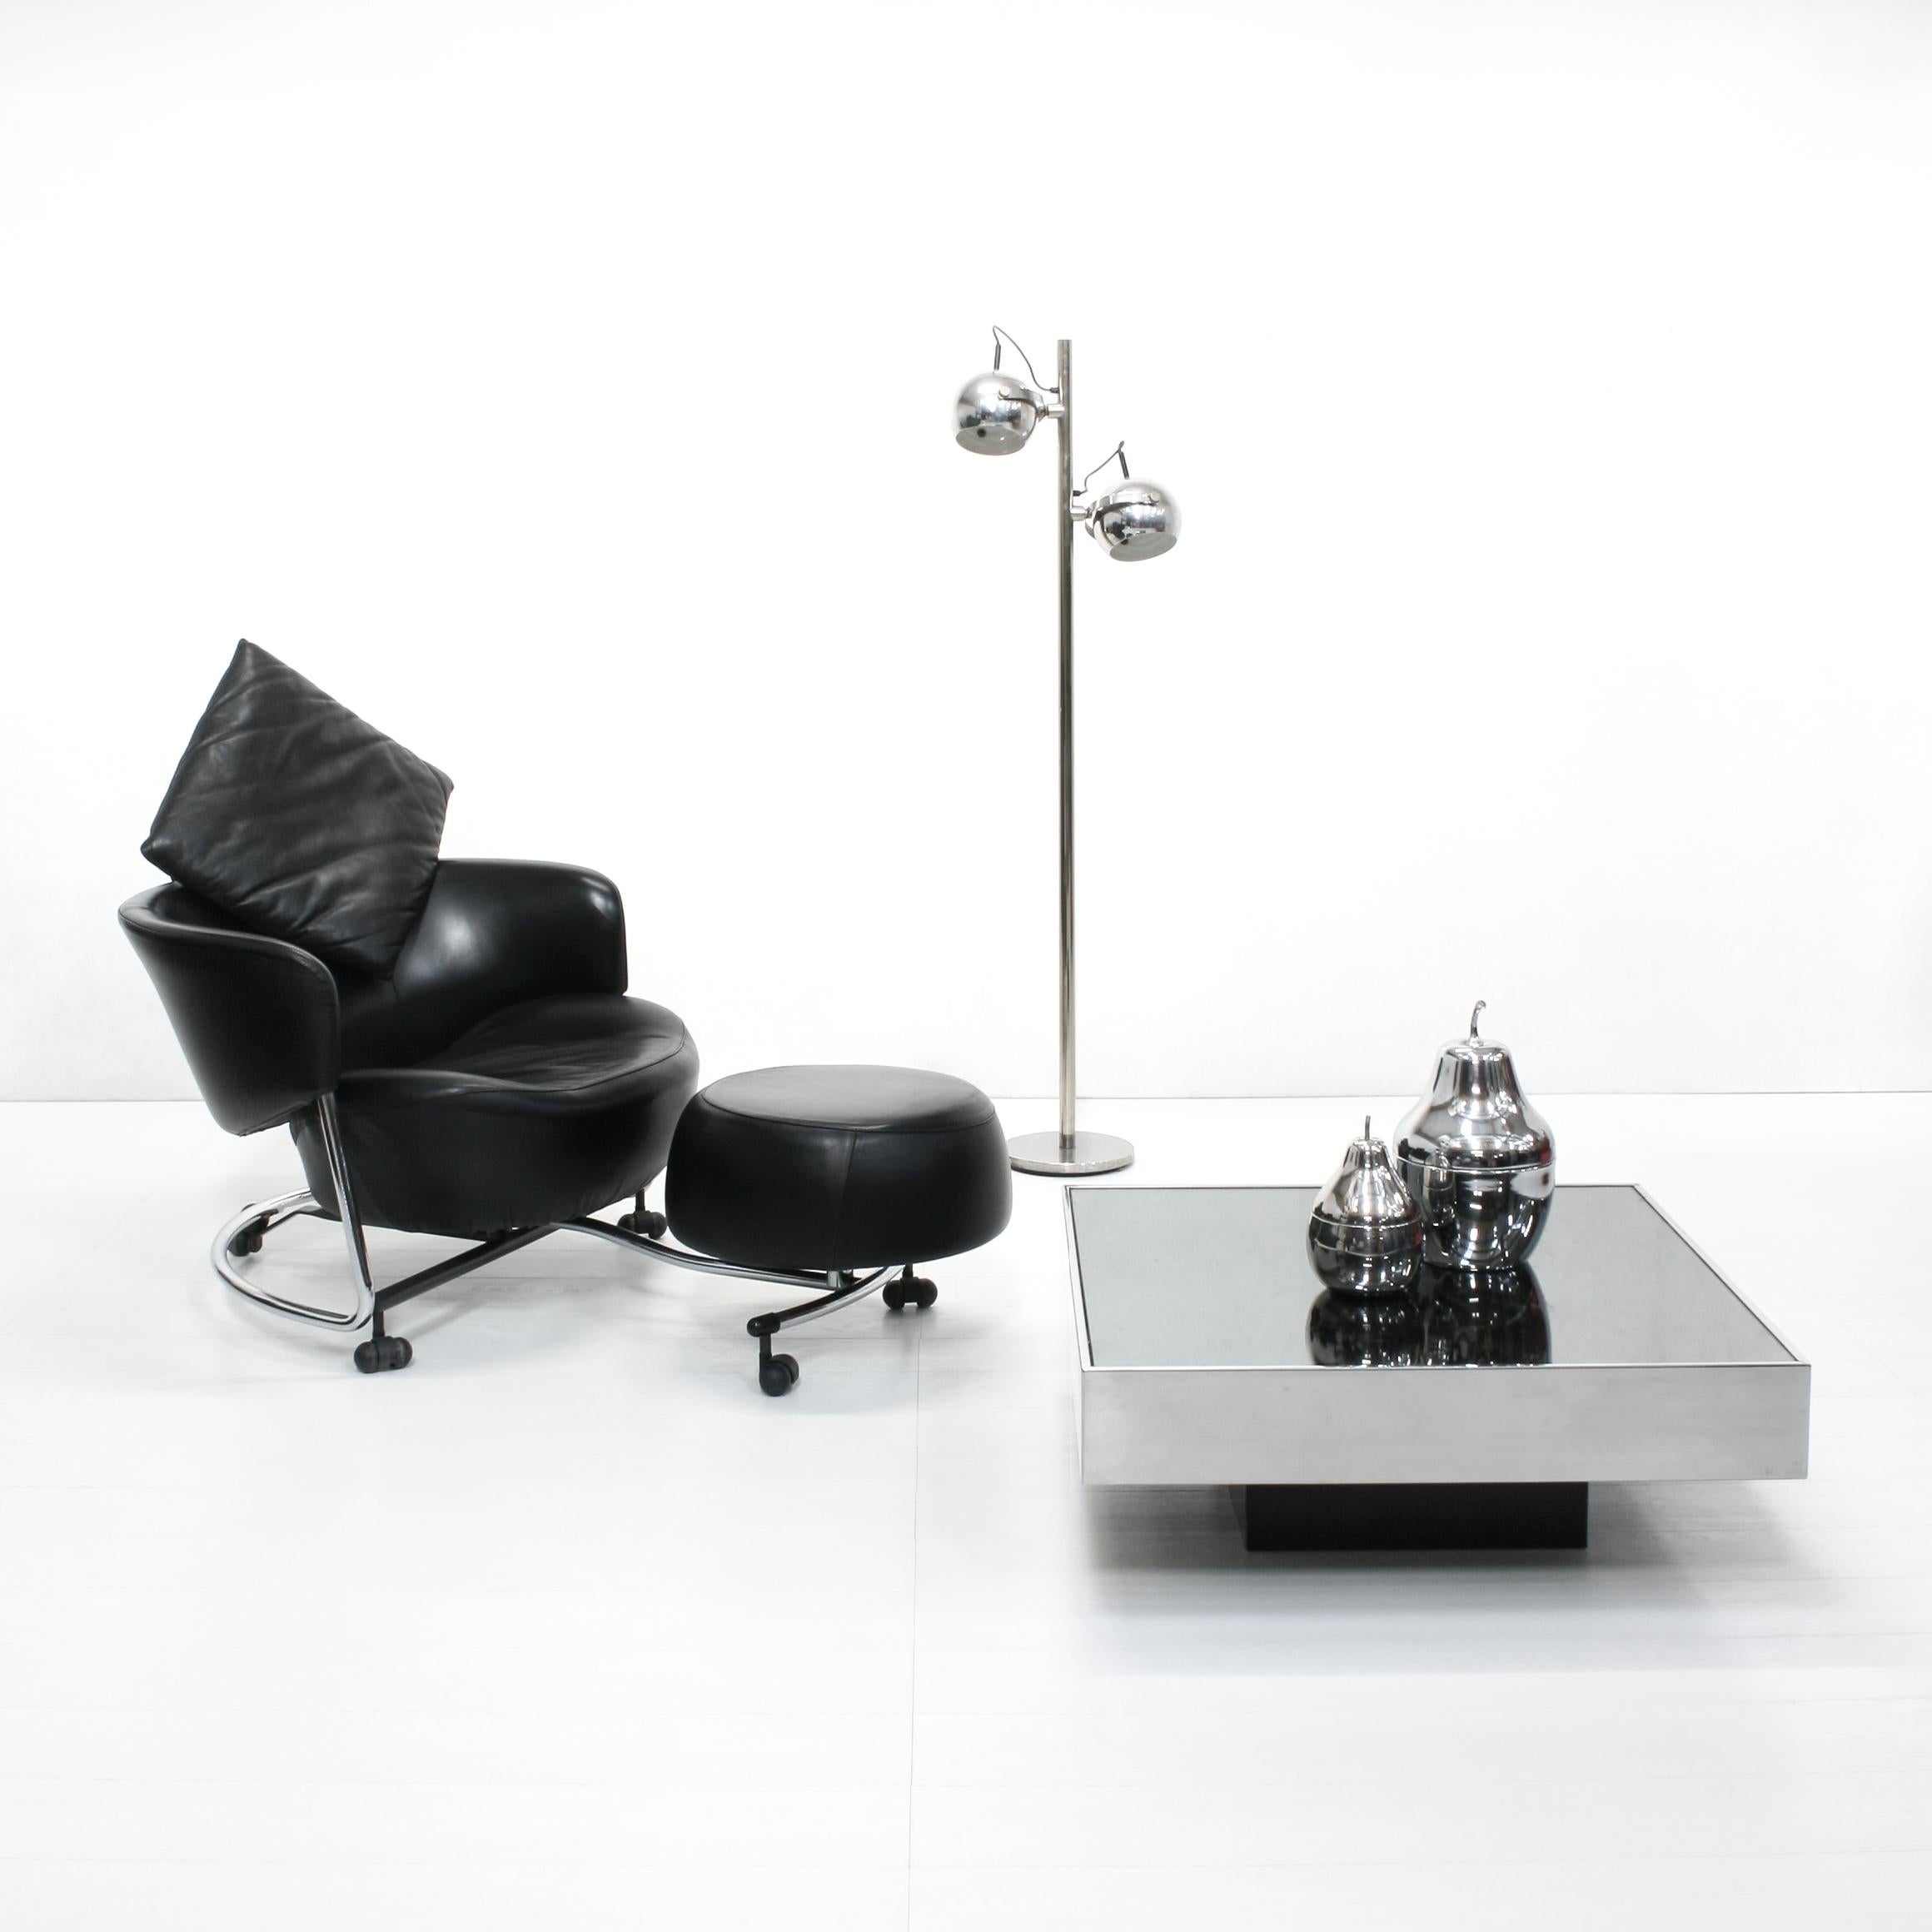 Fauteuil postmoderne en cuir noir sur une structure chromée avec siège, coussin d'appui-tête et ottoman satellite mobiles indépendamment. Le dossier est réglable en inclinaison.